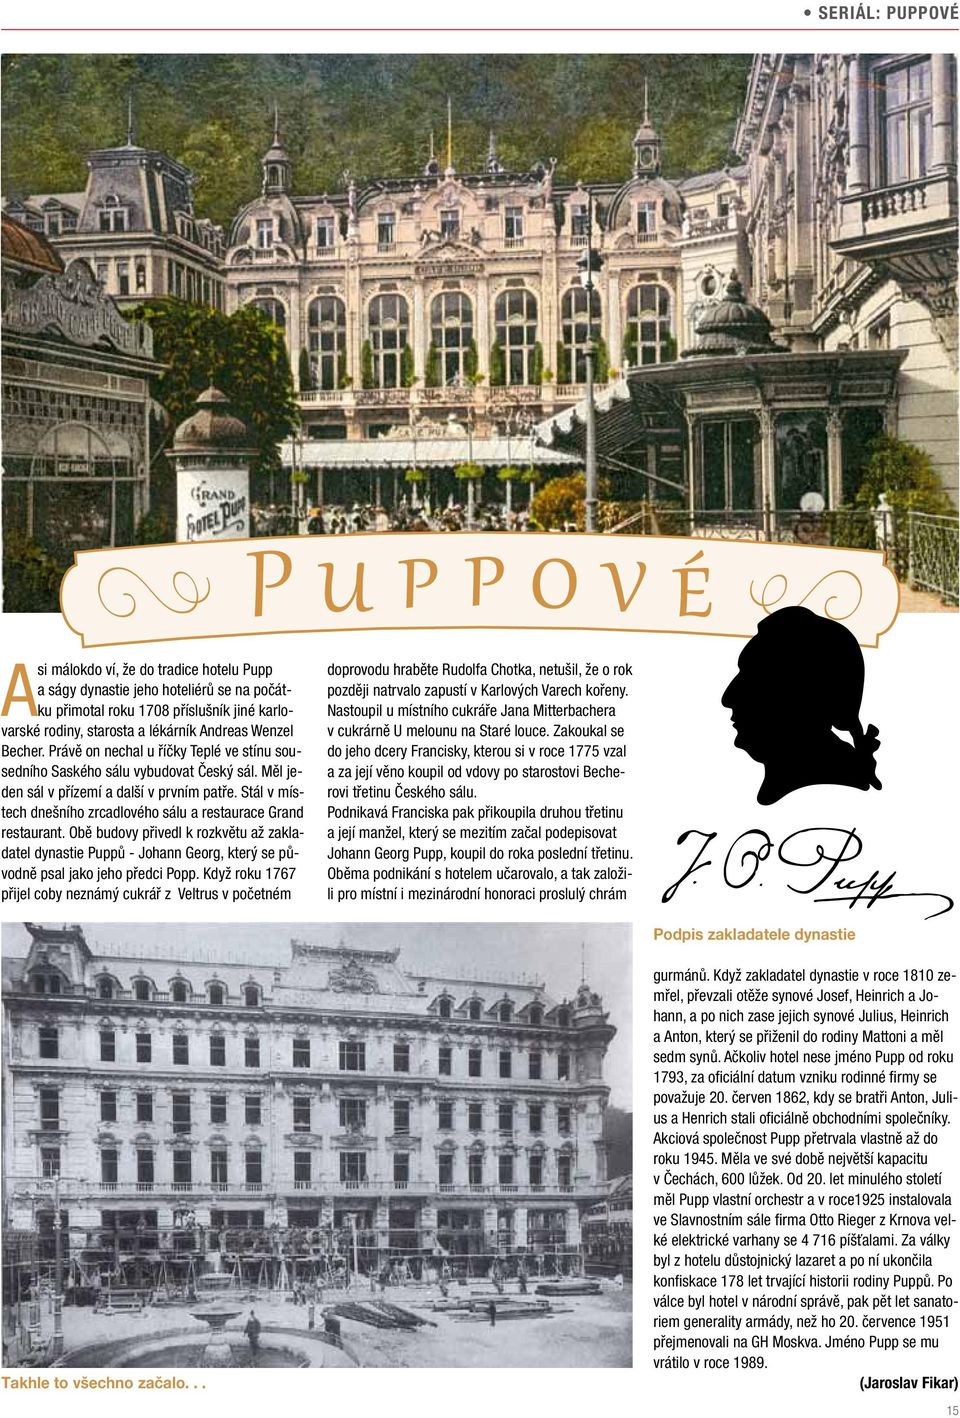 Stál v místech dnešního zrcadlového sálu a restaurace Grand restaurant. Obě budovy přivedl k rozkvětu až zakladatel dynastie Puppů - Johann Georg, který se původně psal jako jeho předci Popp.